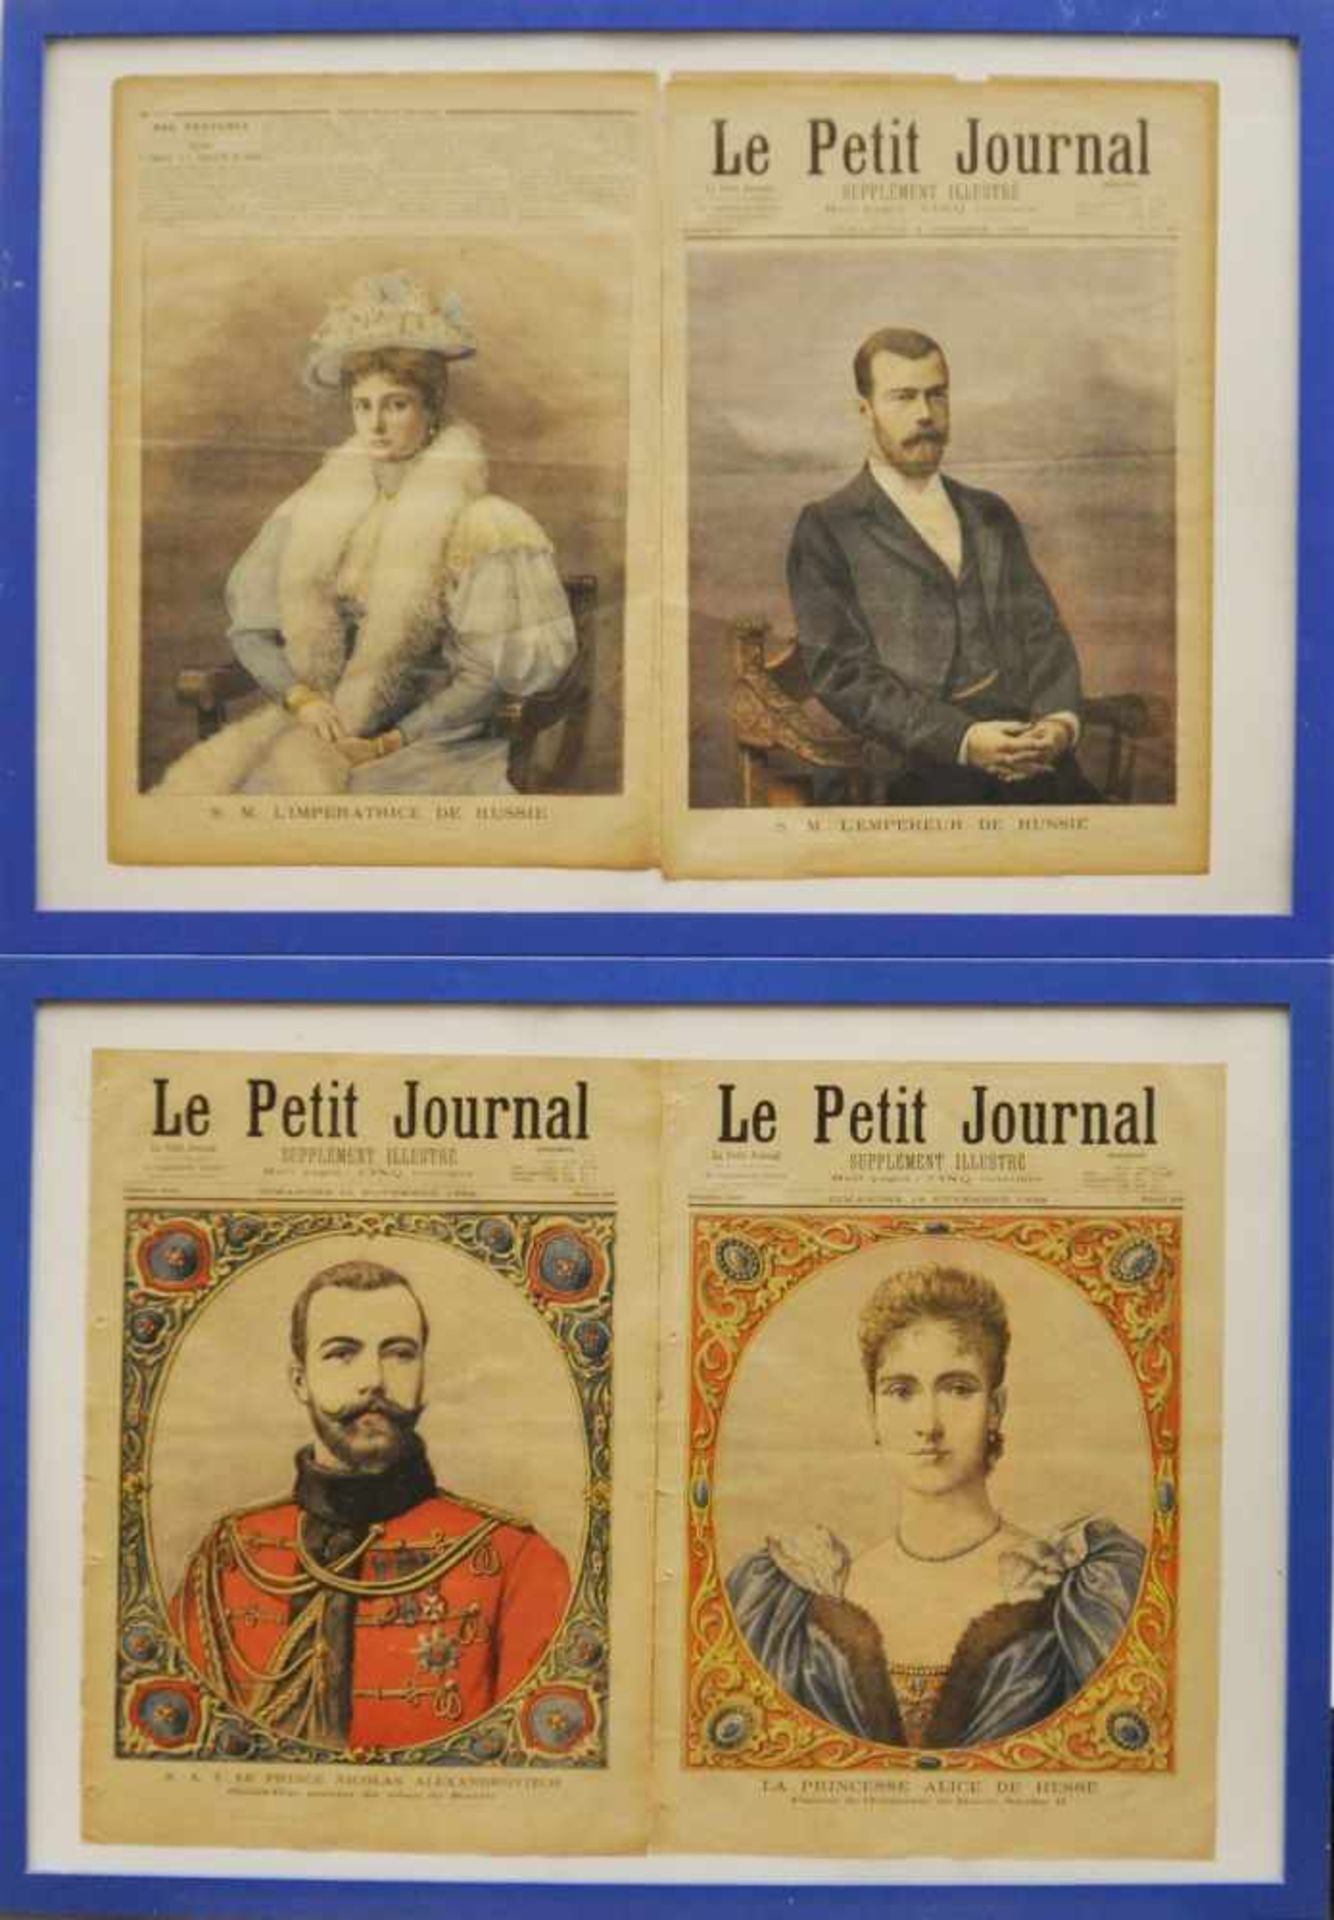 Le Petit Journal, Frankreich 1894/96,Abbildungen von Nicolas Androvitch und Alice von Hessen 1894